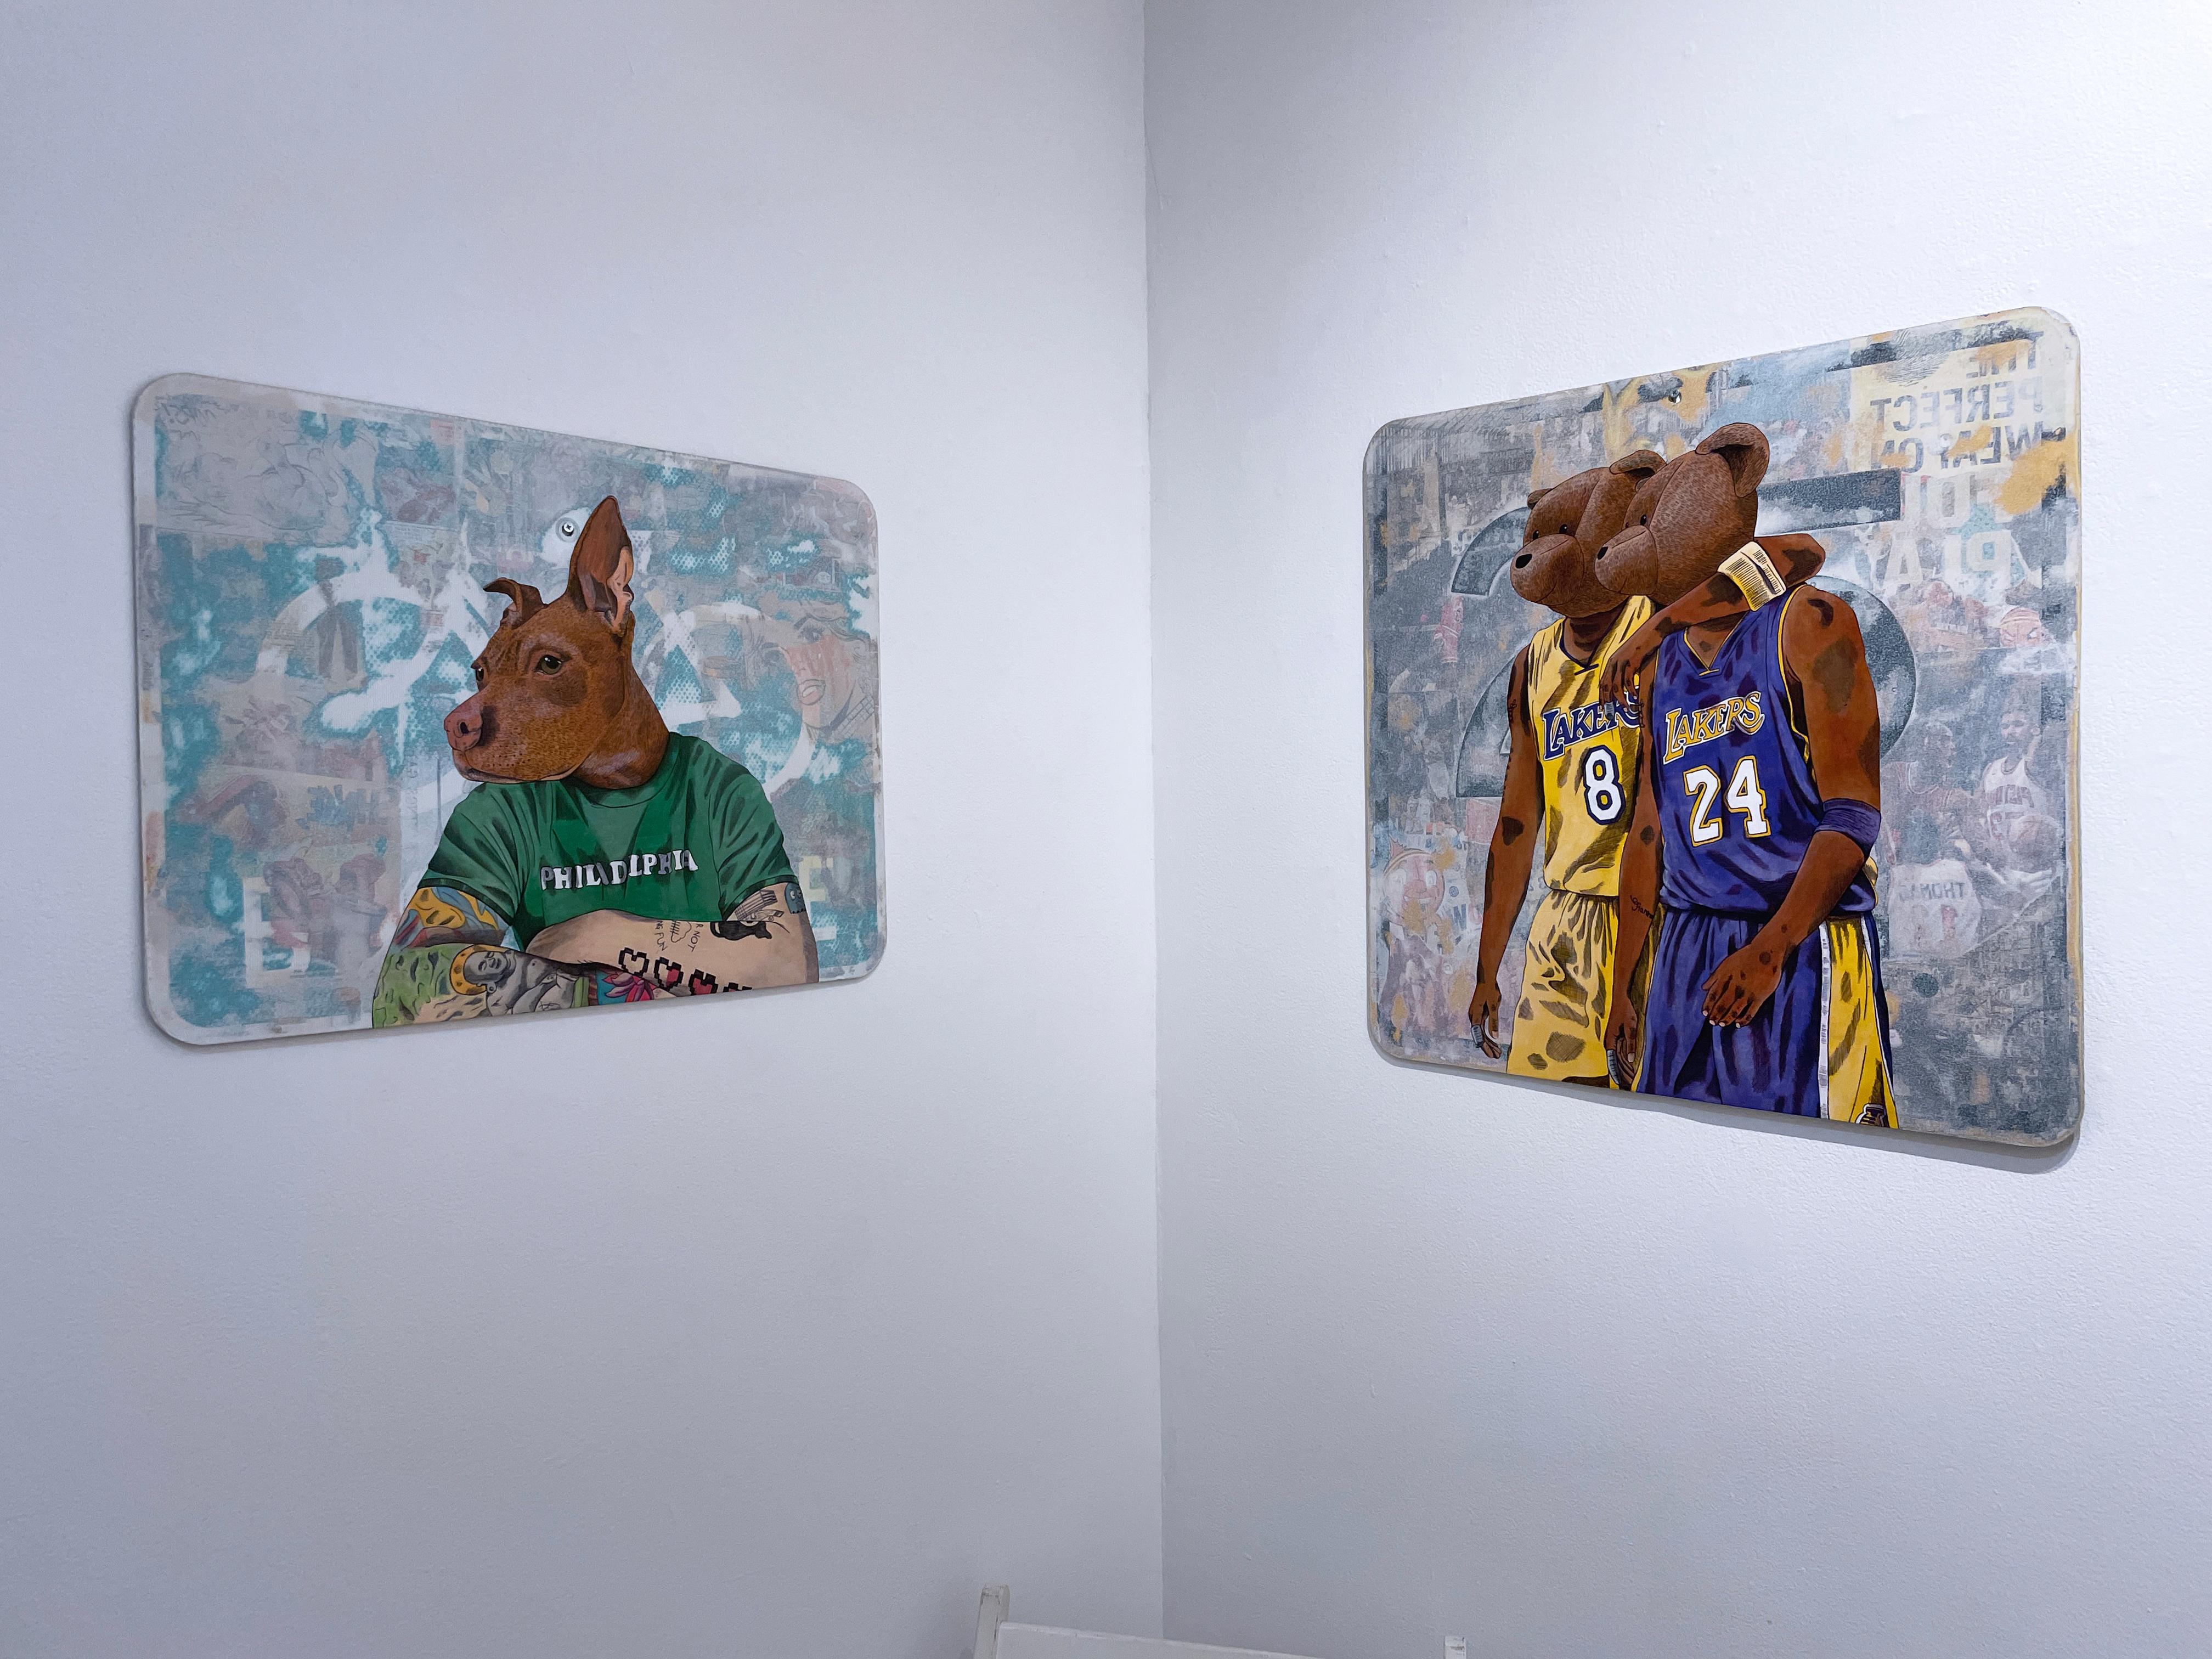 Kobe, 2023, Mamba Mentality, LA LAKERS Kobe Bryant basketball jersey #24 #8 - Street Art Painting by Sean 9 Lugo